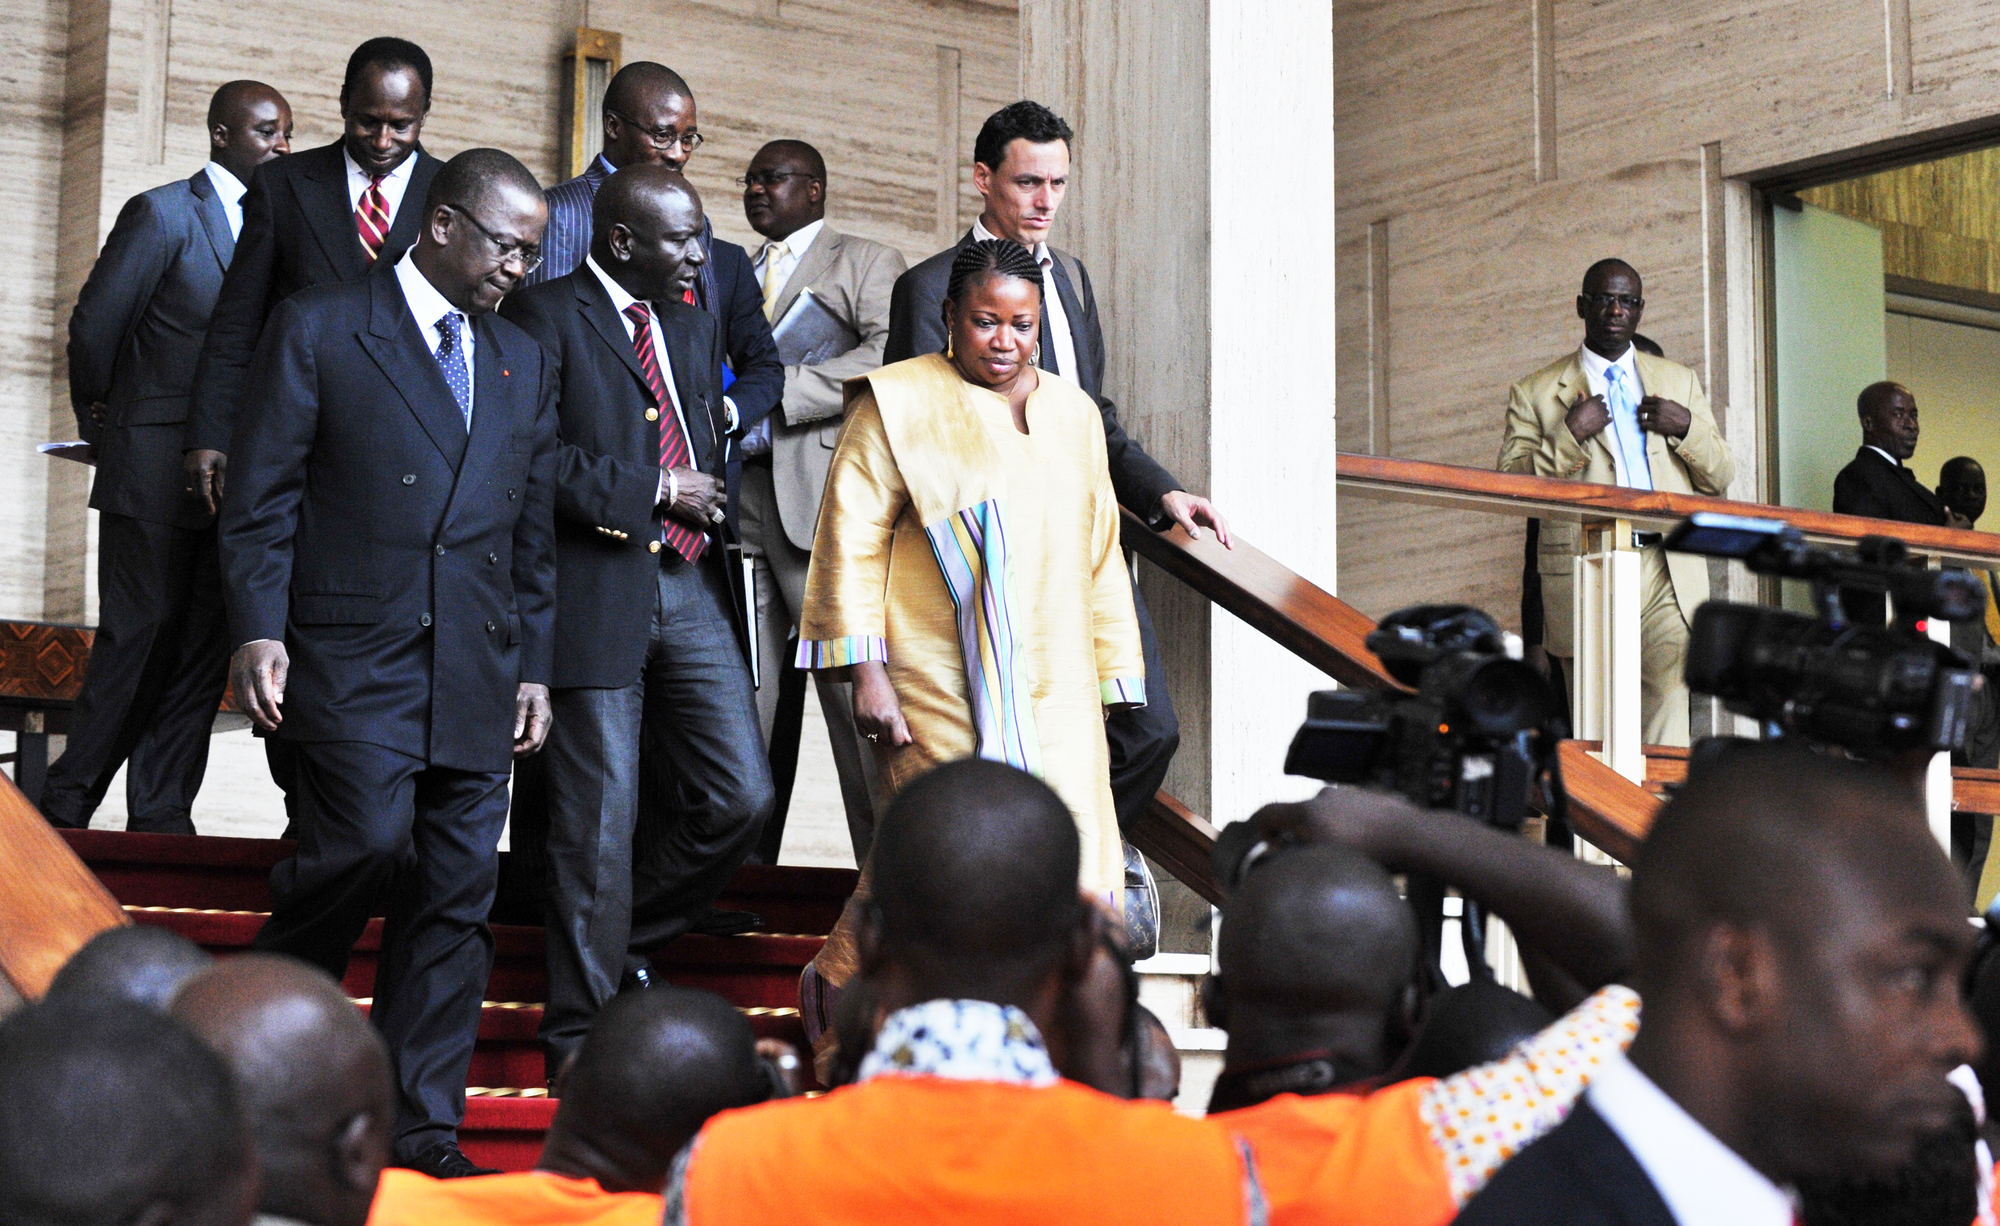 Une délégation de la CPI sortant du palais présidentiel ivoirien, le 28 juin 2011.